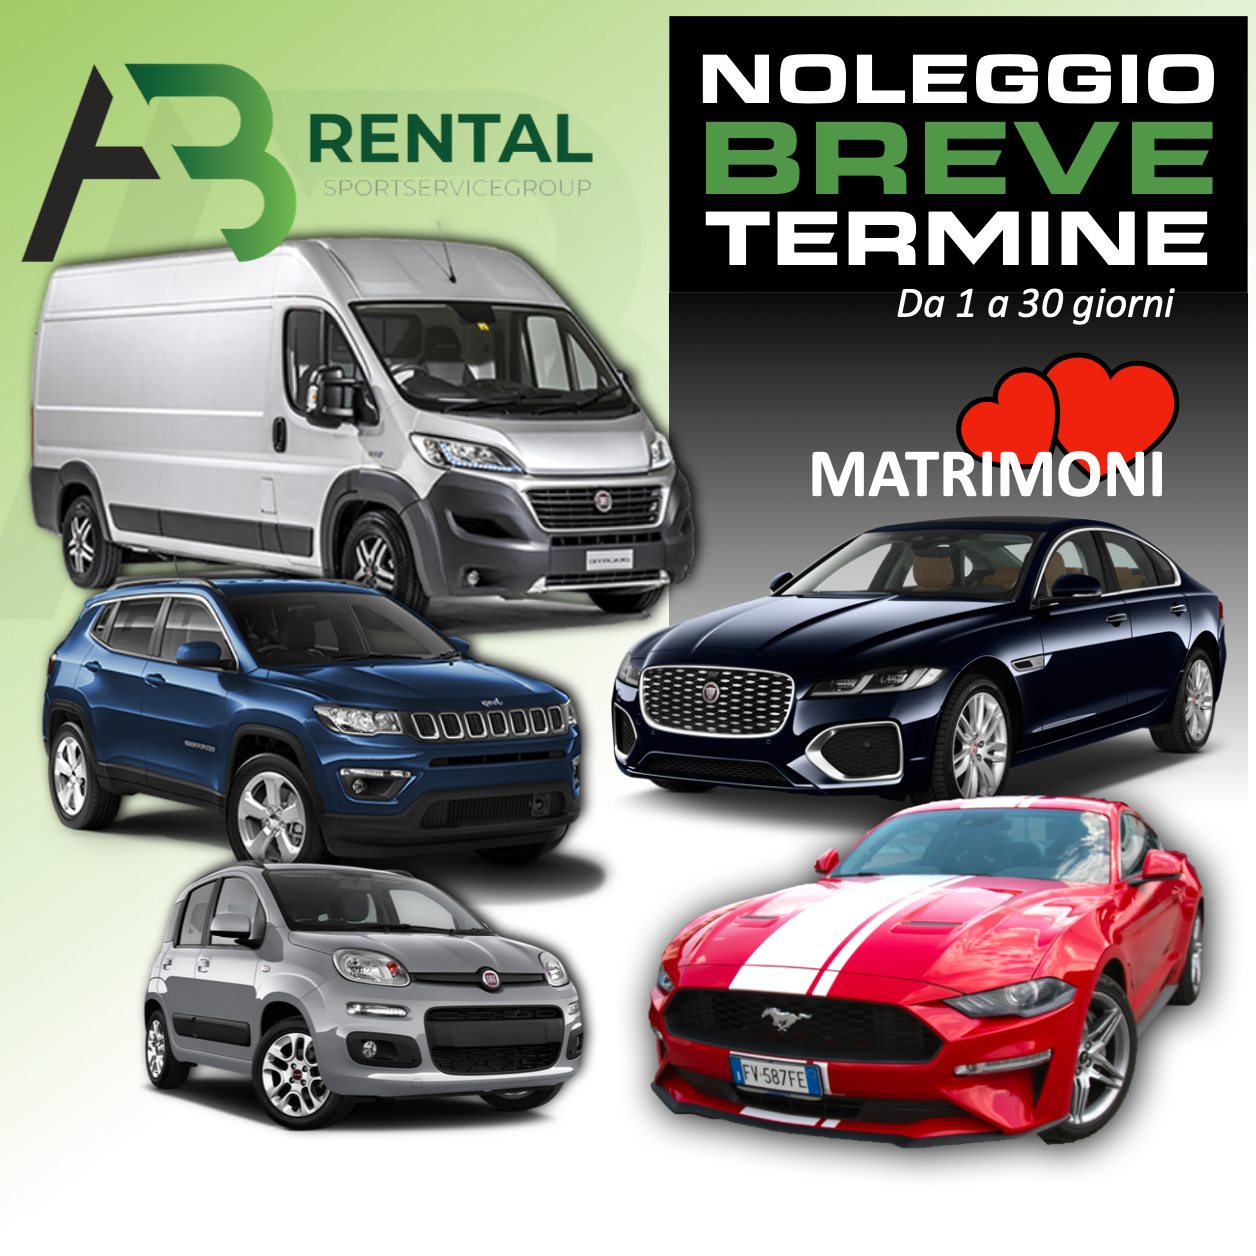 AB RENTAL – NOLEGGIO AUTO – Made In Pinerolo